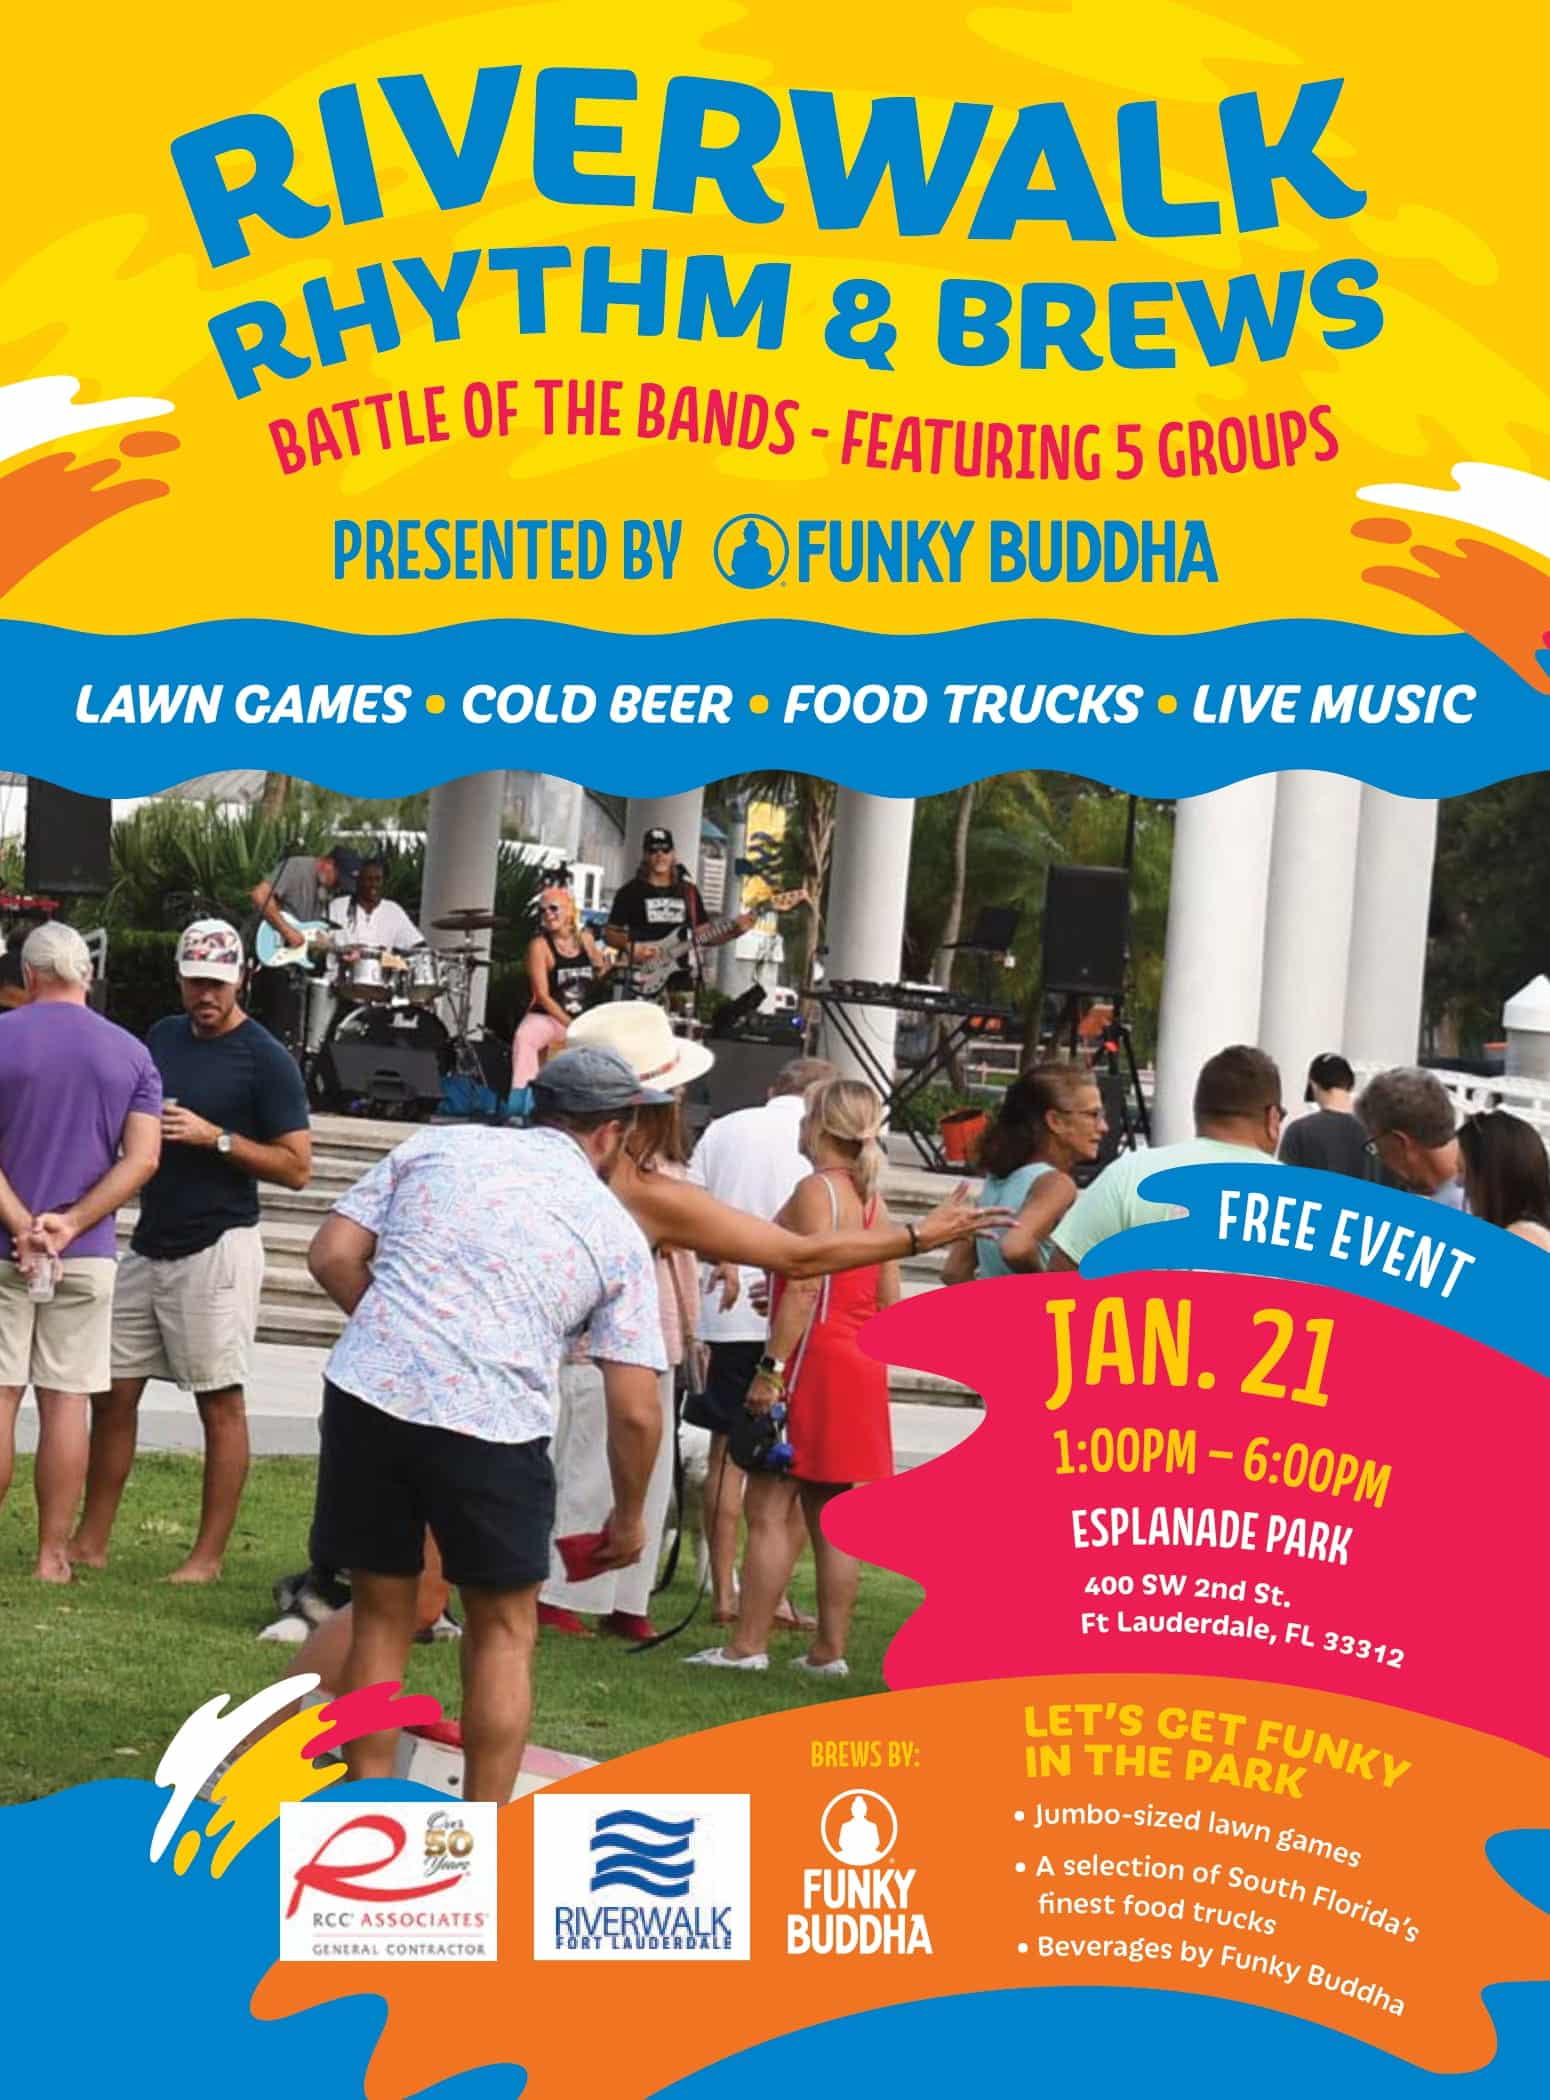 Riverwalk Rhythm & Brews III Battle of the Bands presented by Funky Buddha